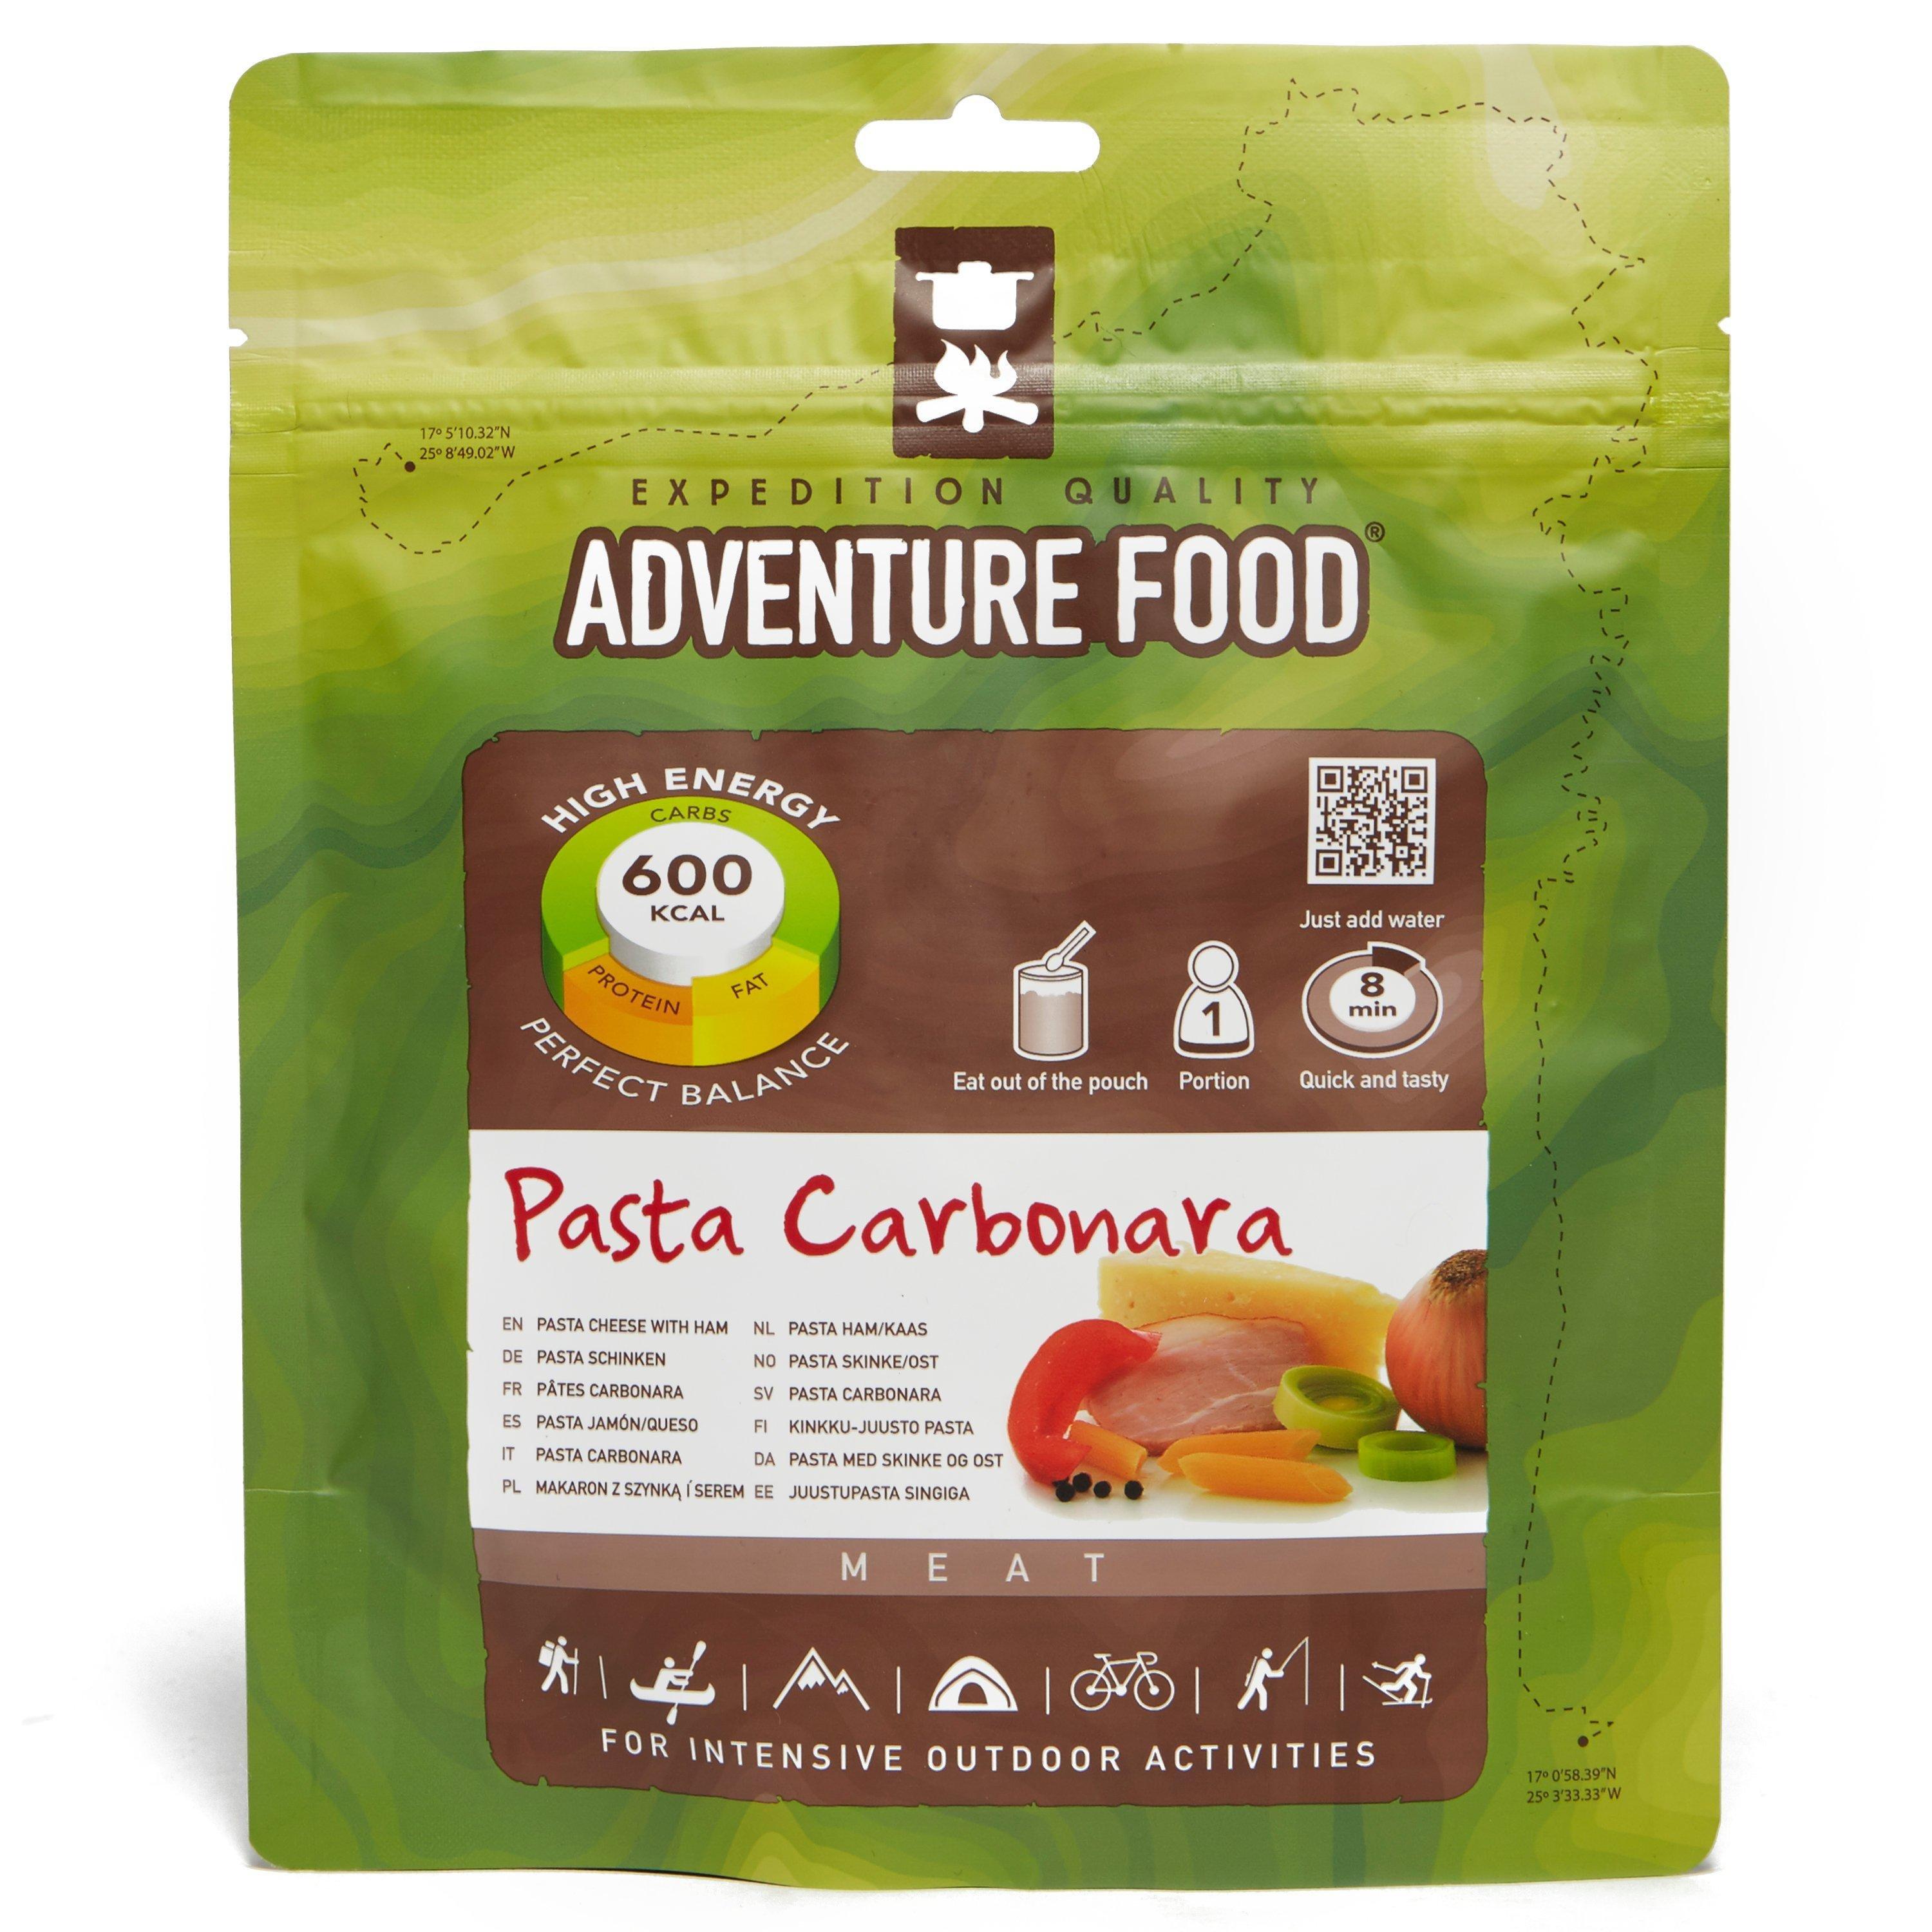 Trekmates Pasta Carbonara Reviews - Updated April 2023